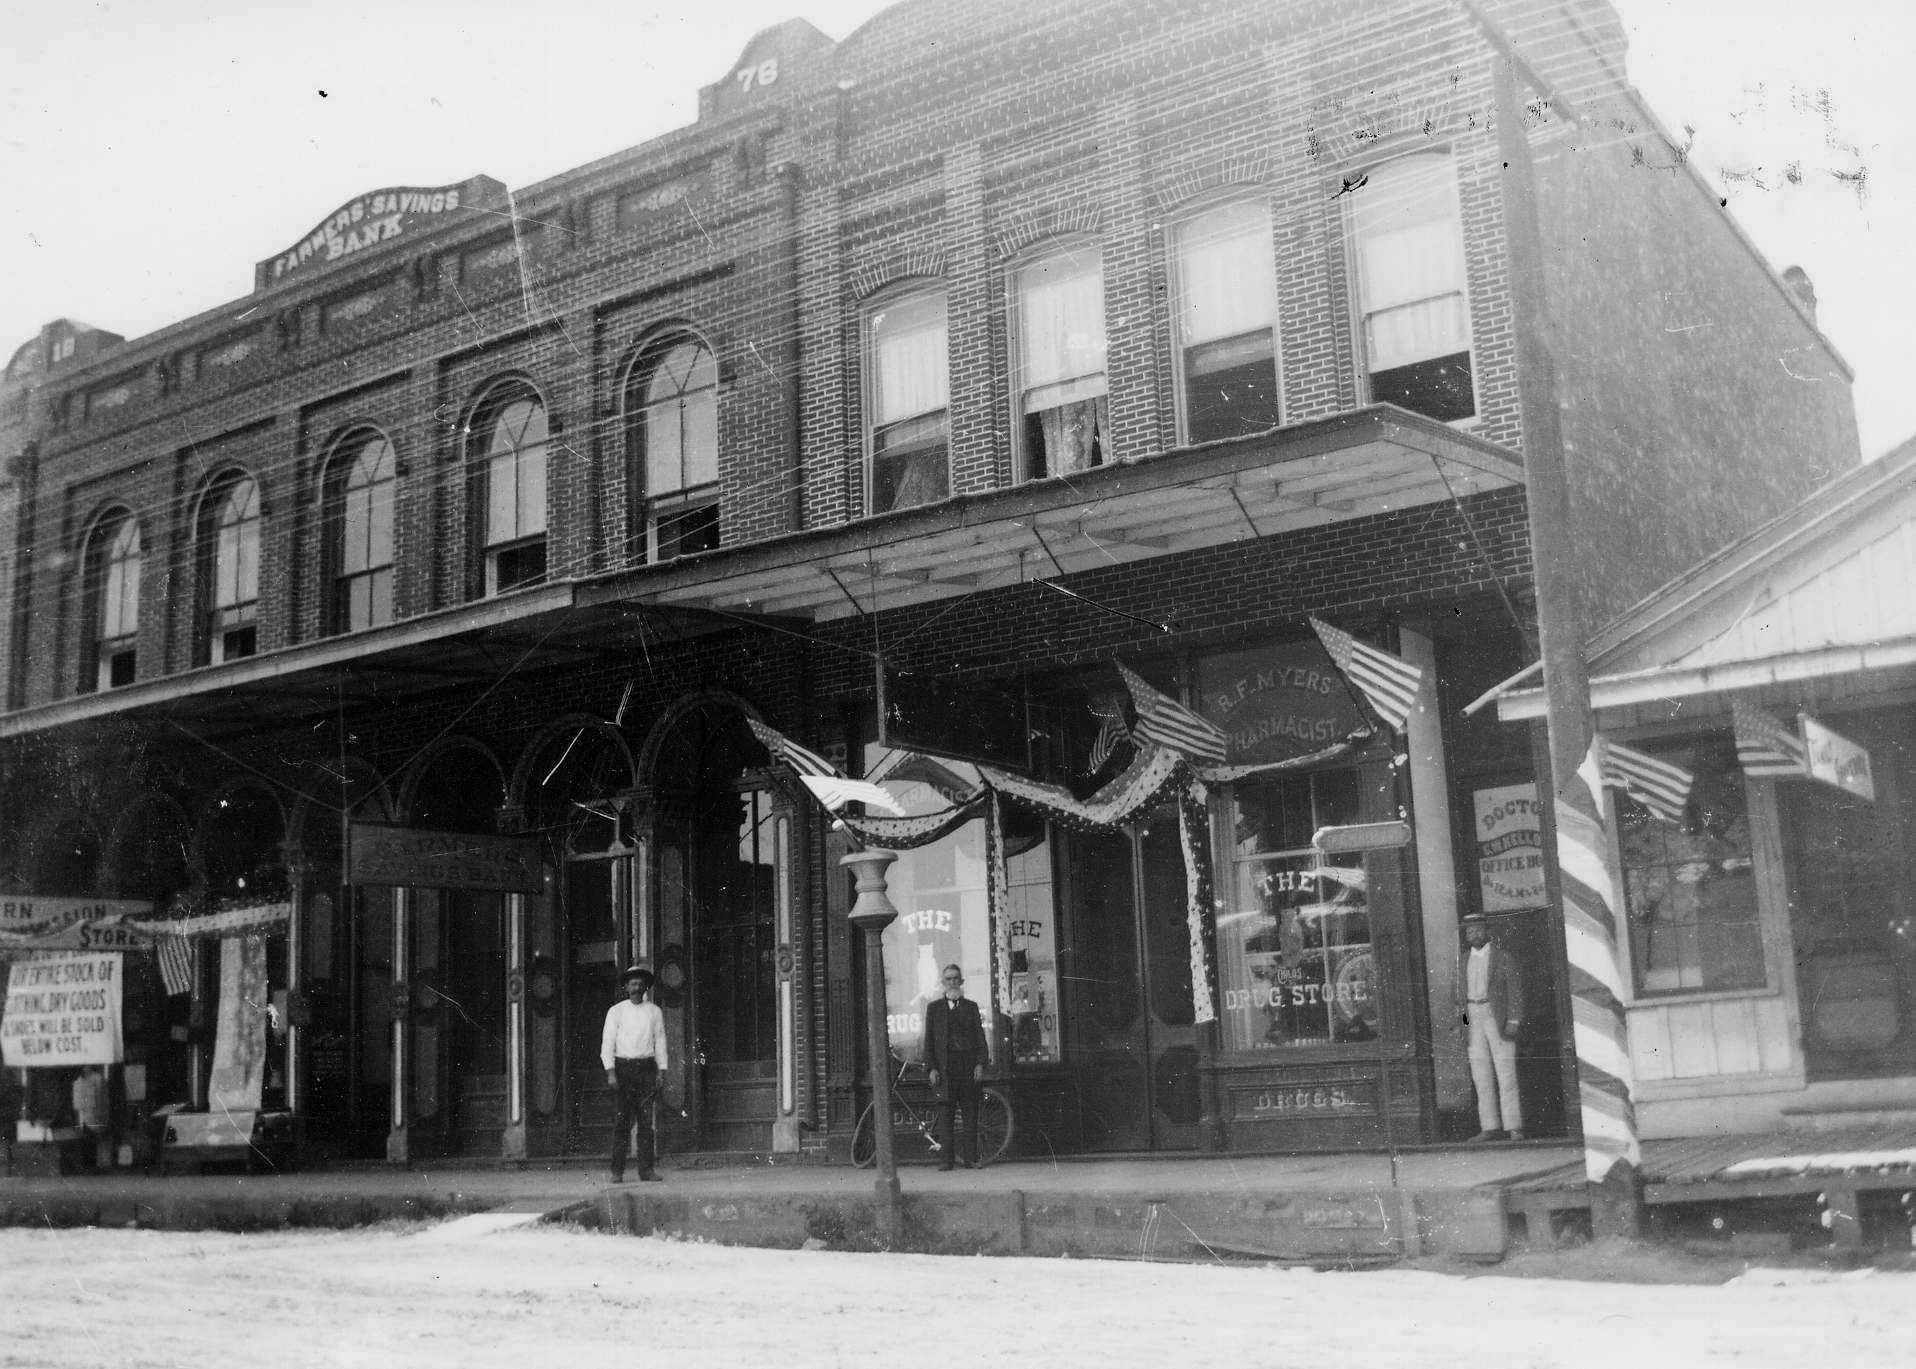 Farmers Bank 175 N. Main circa 1925